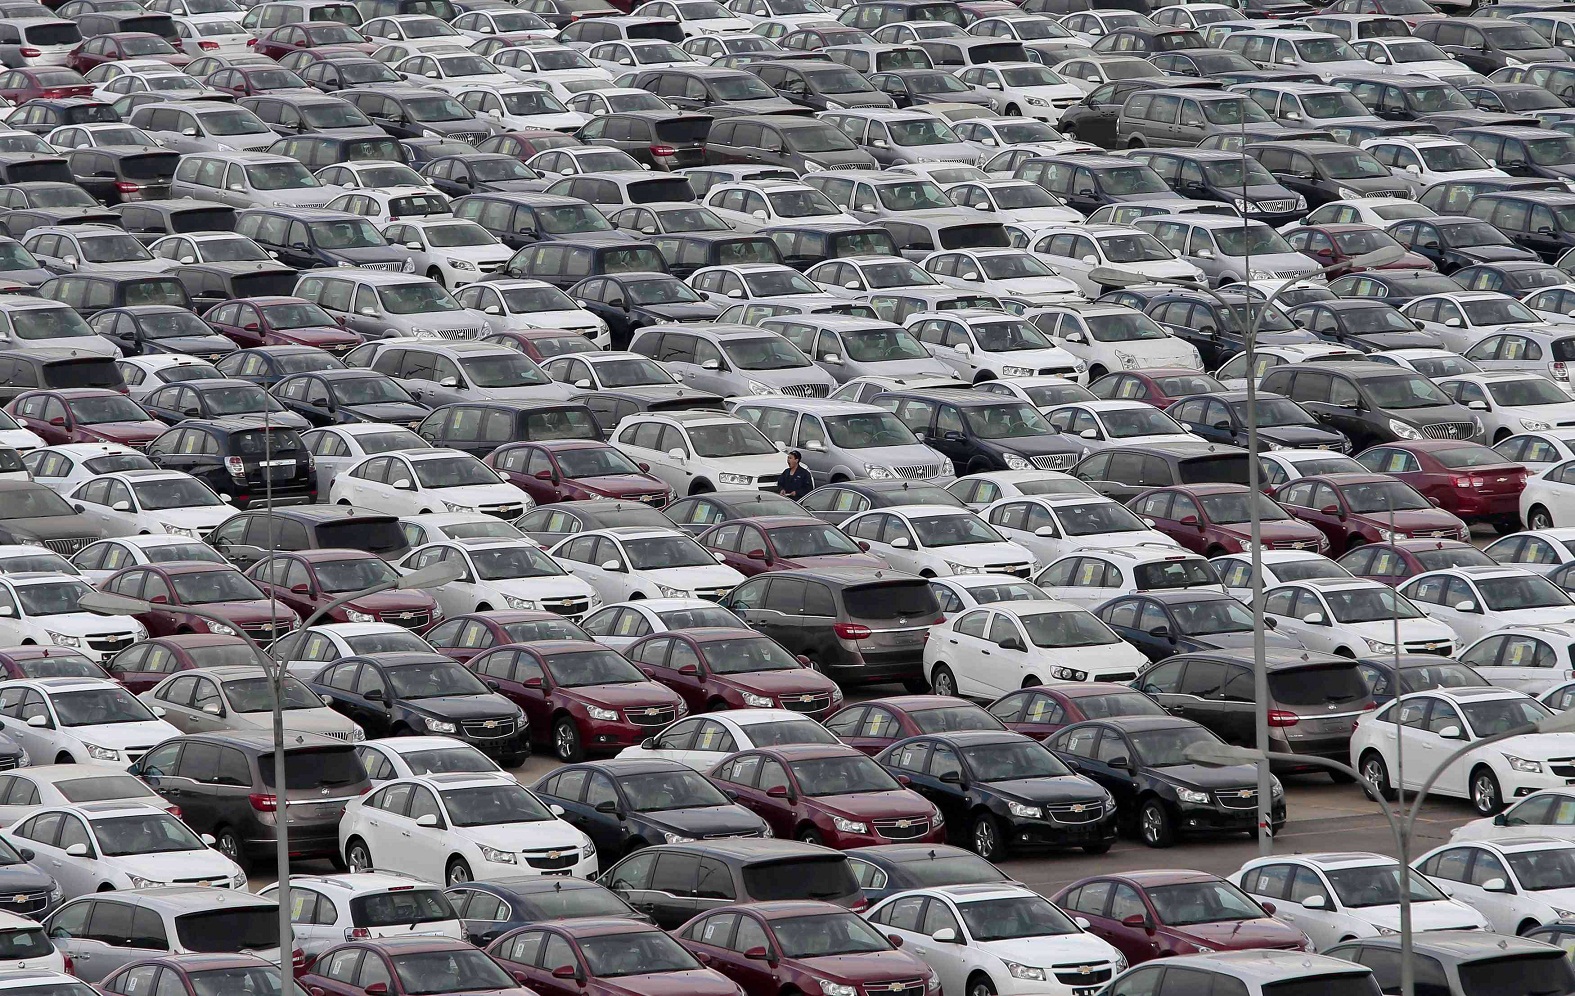 מכוניות. היבואנים נדיבים יותר בהנחות למועדוני הצרכנות. חפשו אותן (צילום: רויטרס) (צילום: רויטרס)